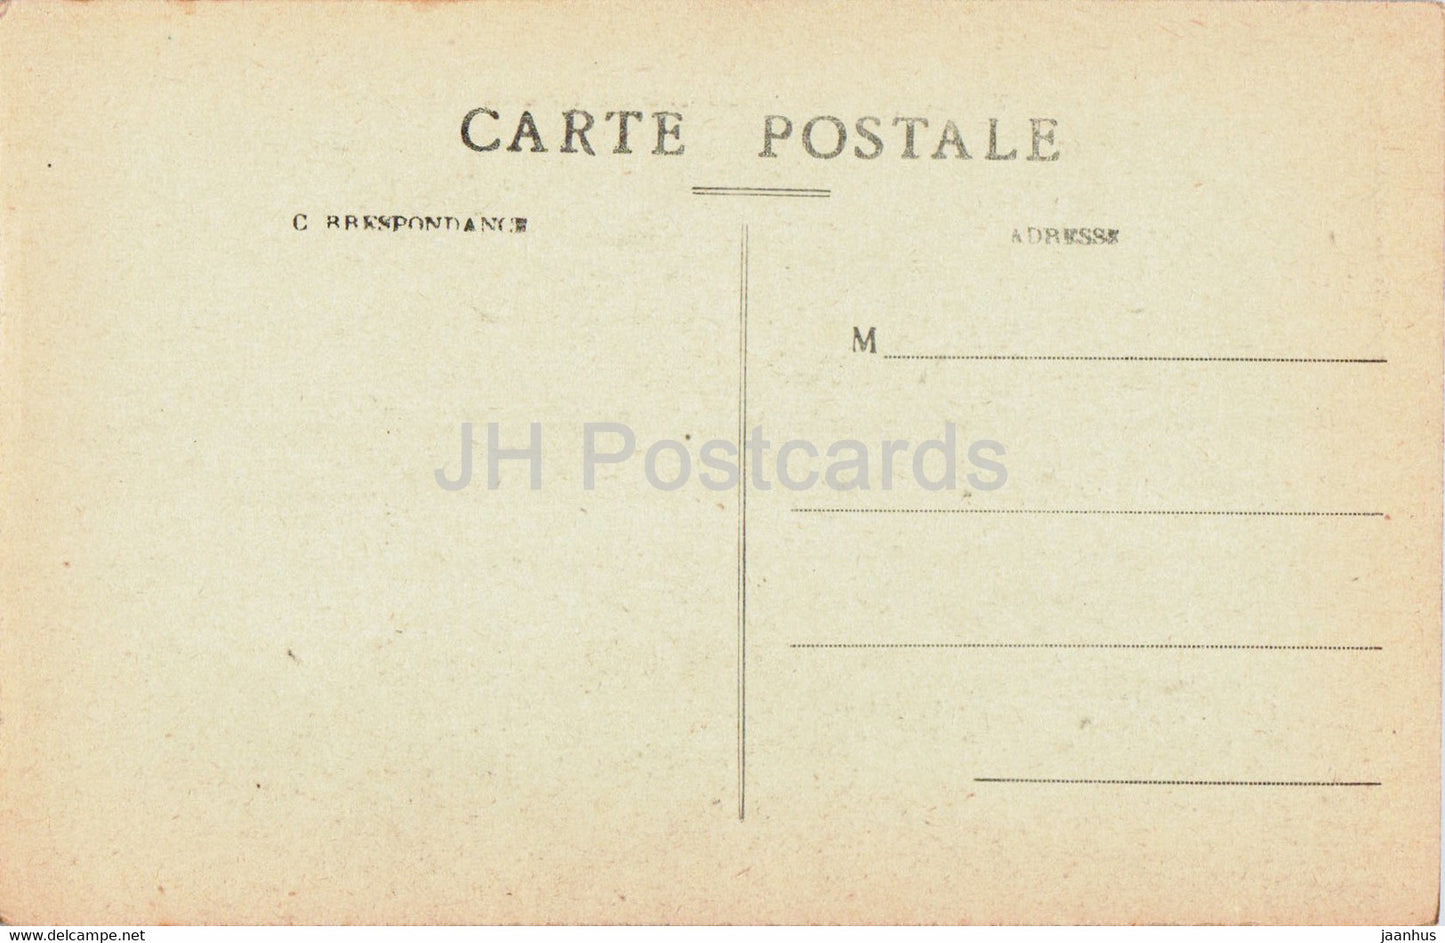 Le Plomb du Cantal – Nos Montagnes – 1831 – alte Postkarte – Frankreich – unbenutzt